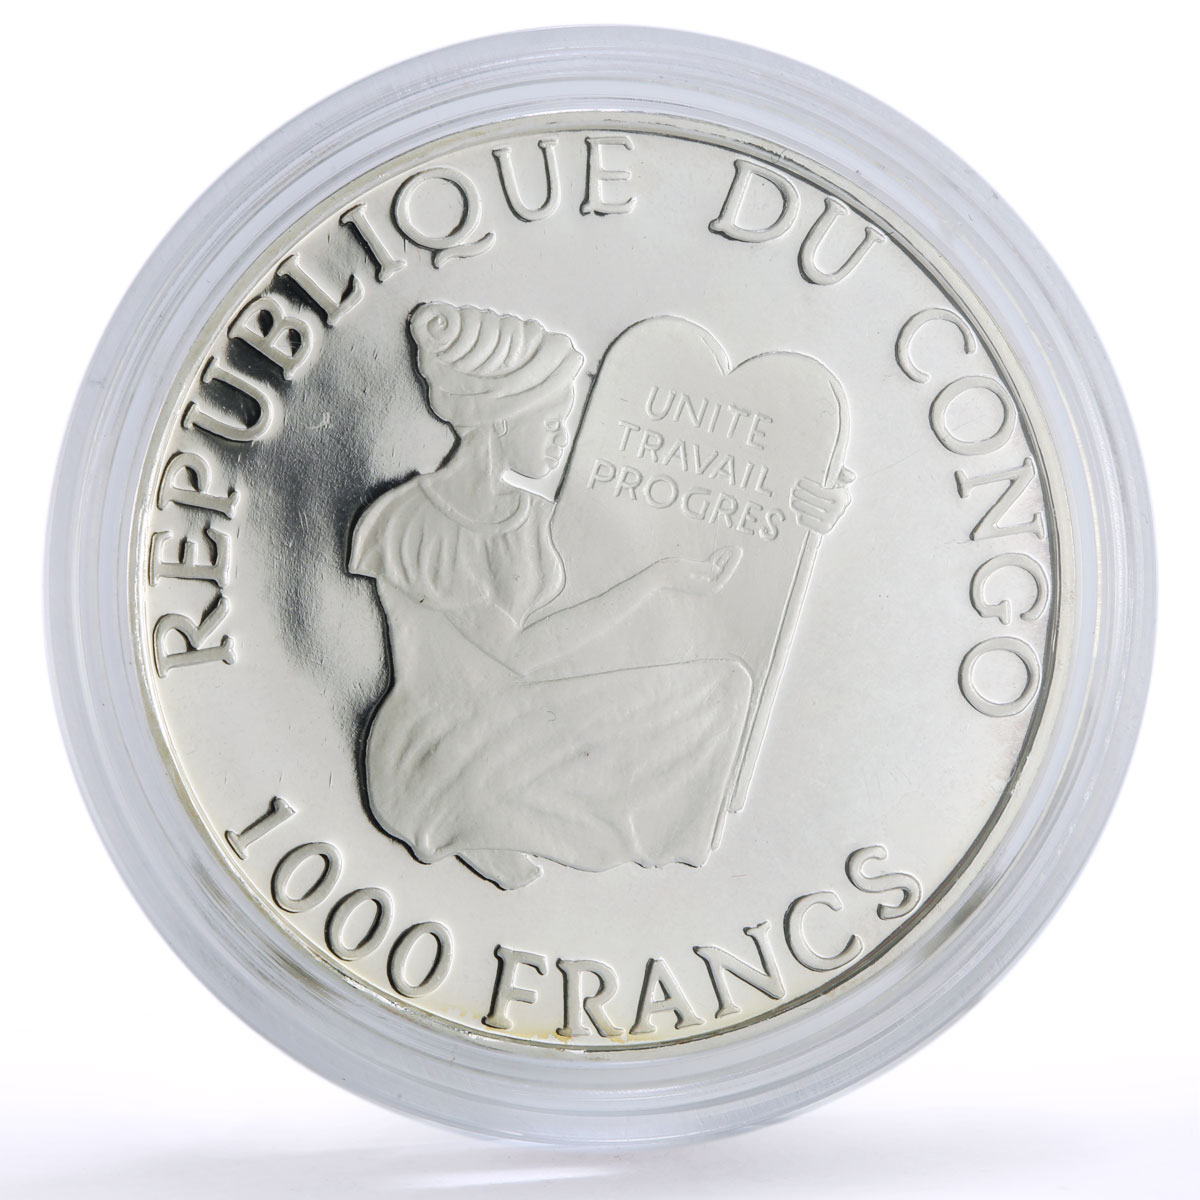 Congo 1000 francs Conservation Wildlife Gorilla Monkey Fauna silver coin 2005